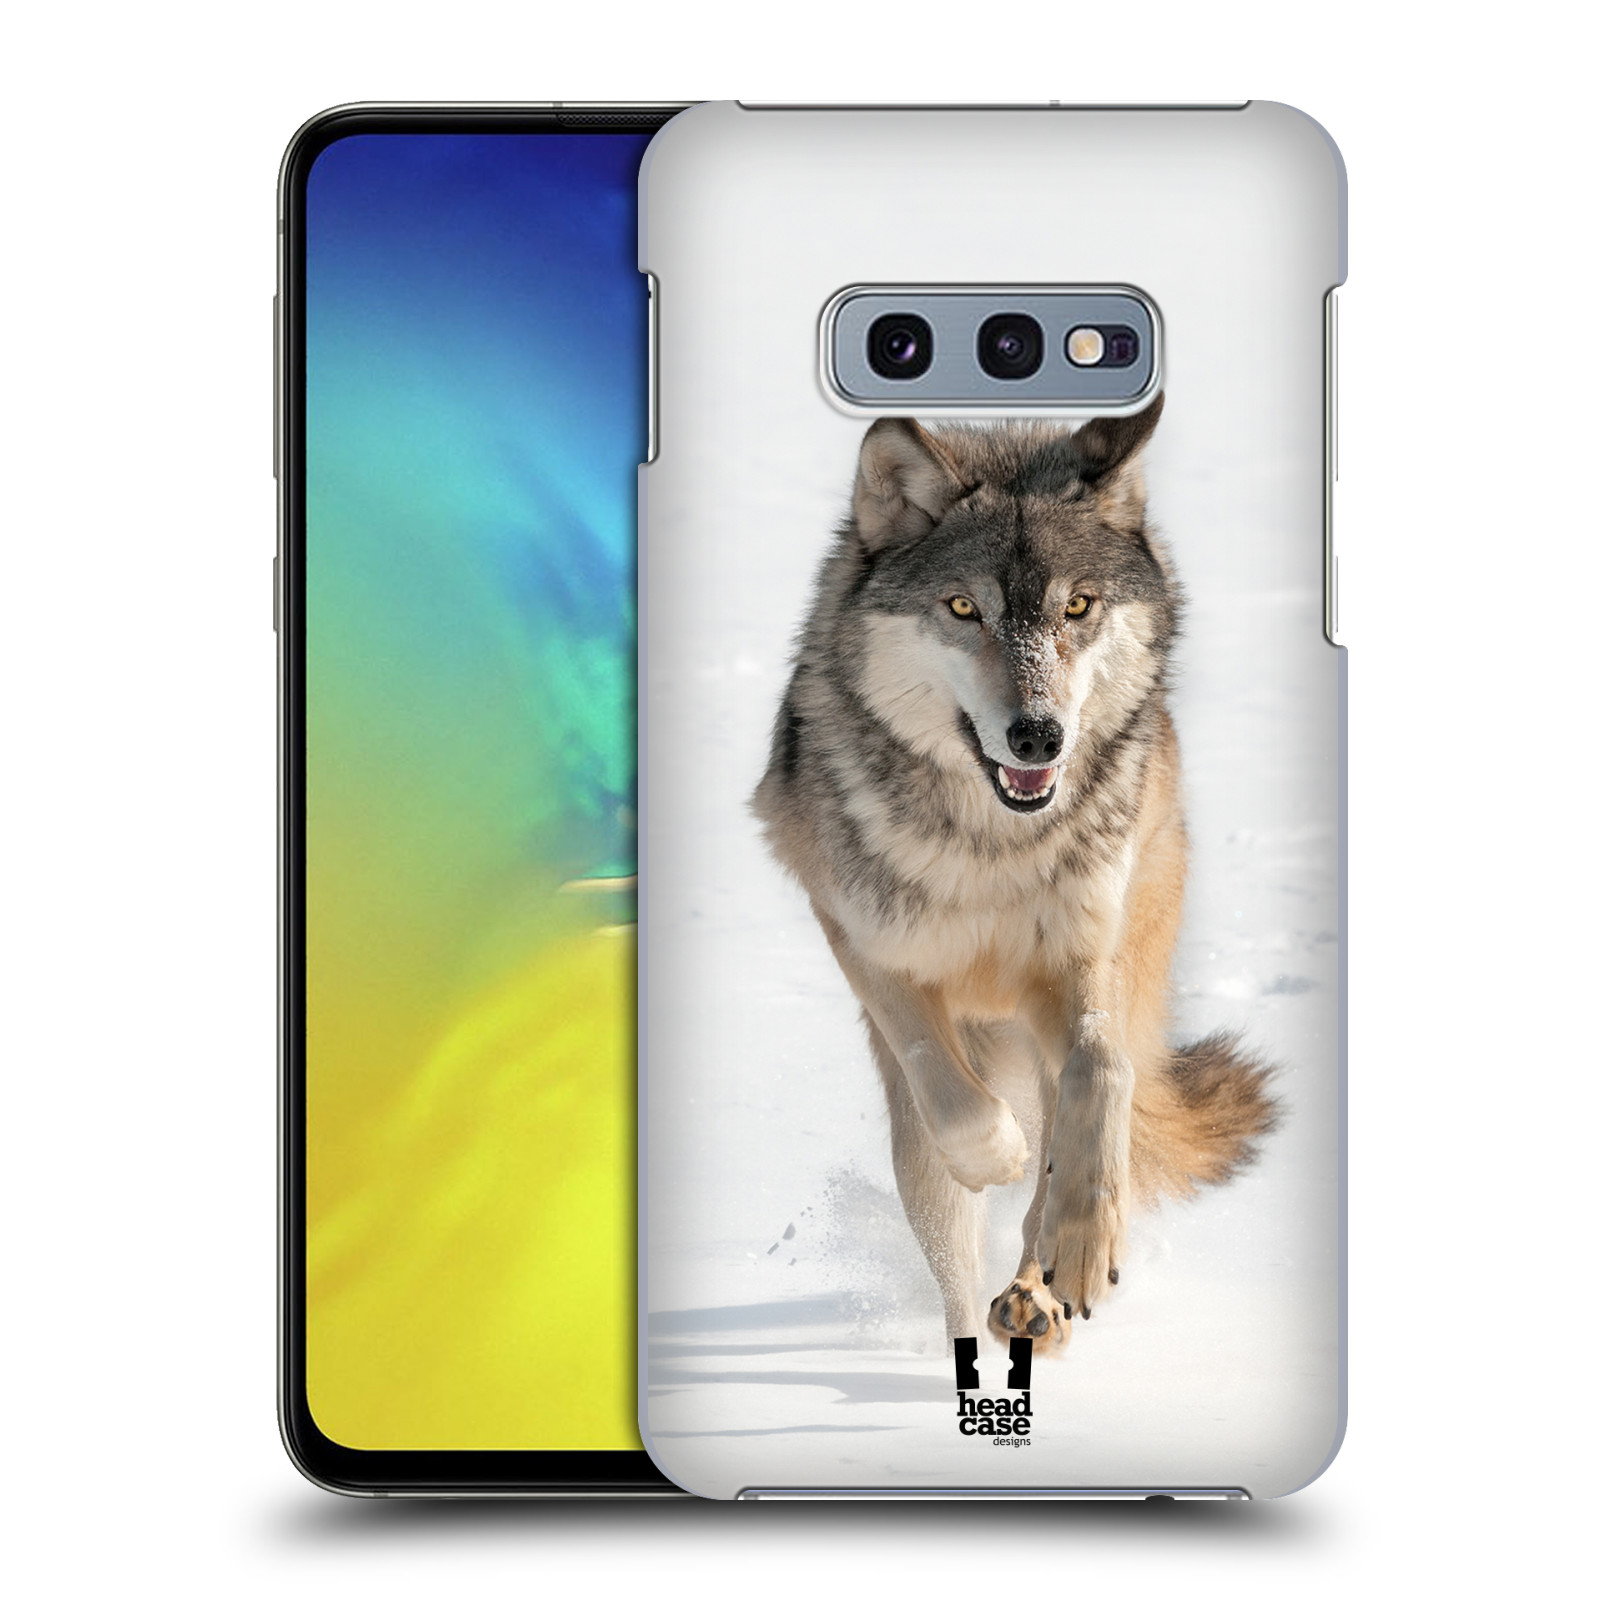 Zadní obal pro mobil Samsung Galaxy S10e - HEAD CASE - Svět zvířat divoký vlk